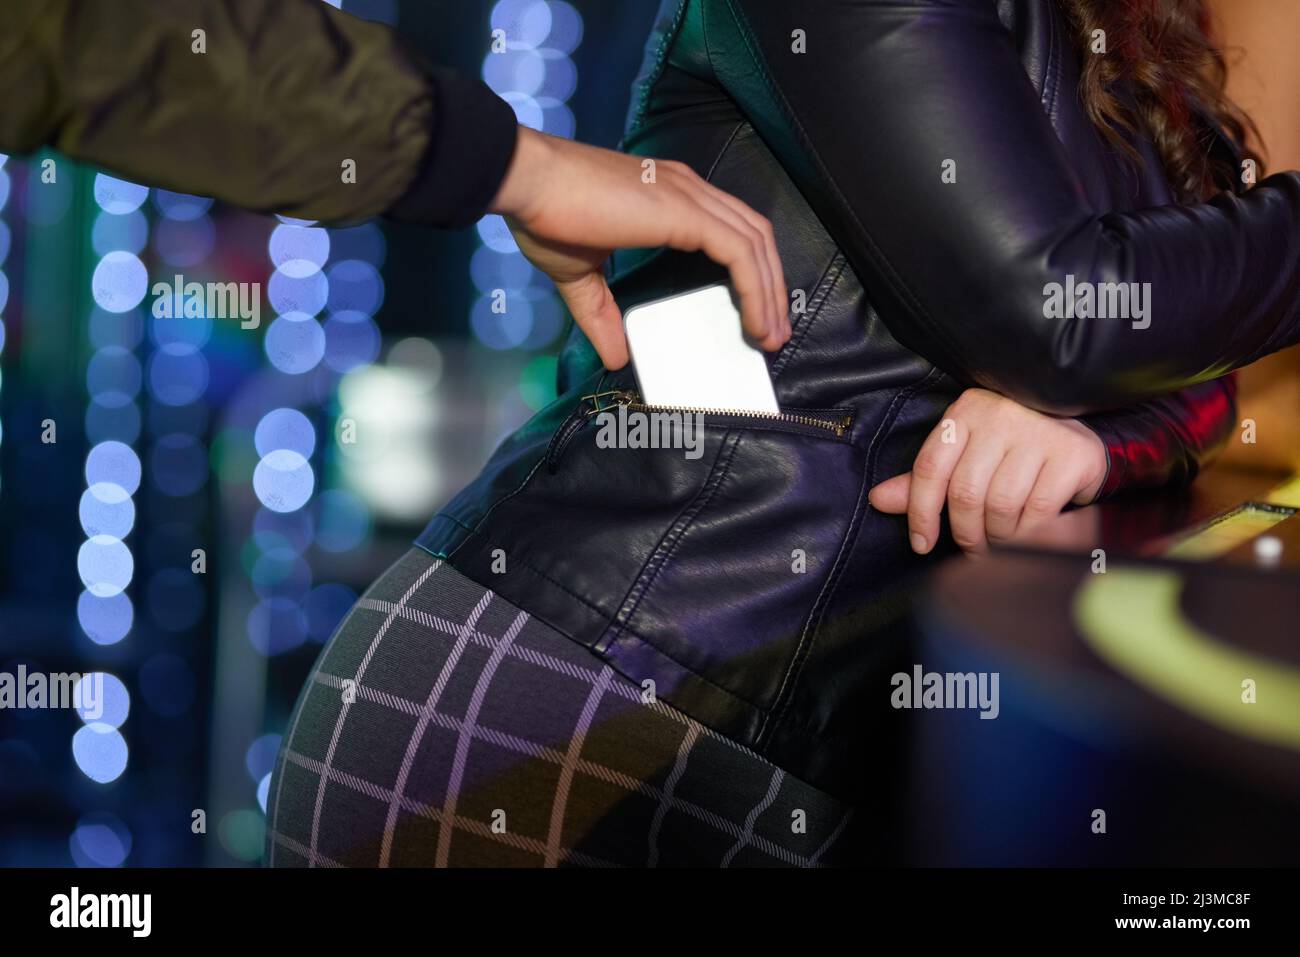 Prenez soin de vos objets de valeur. Gros plan d'un homme pickpockpocket d'un téléphone de femme de sa veste dans une boîte de nuit. Banque D'Images